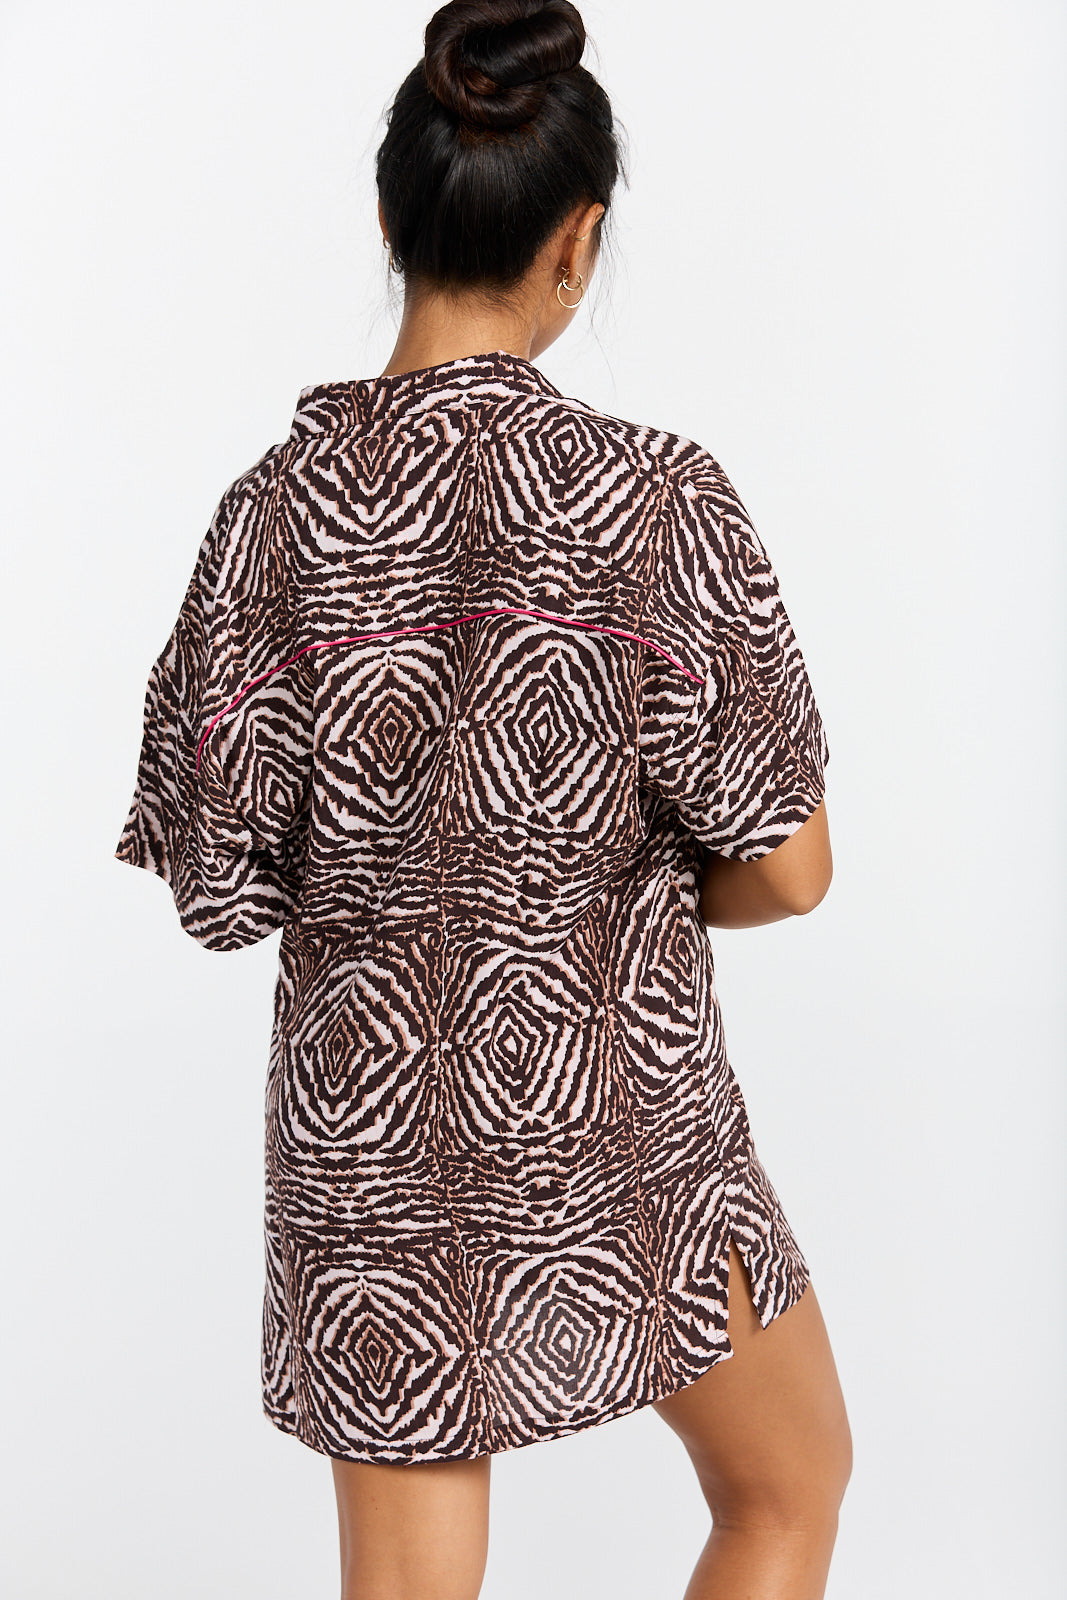 Aloha Shirt Dress - Safari